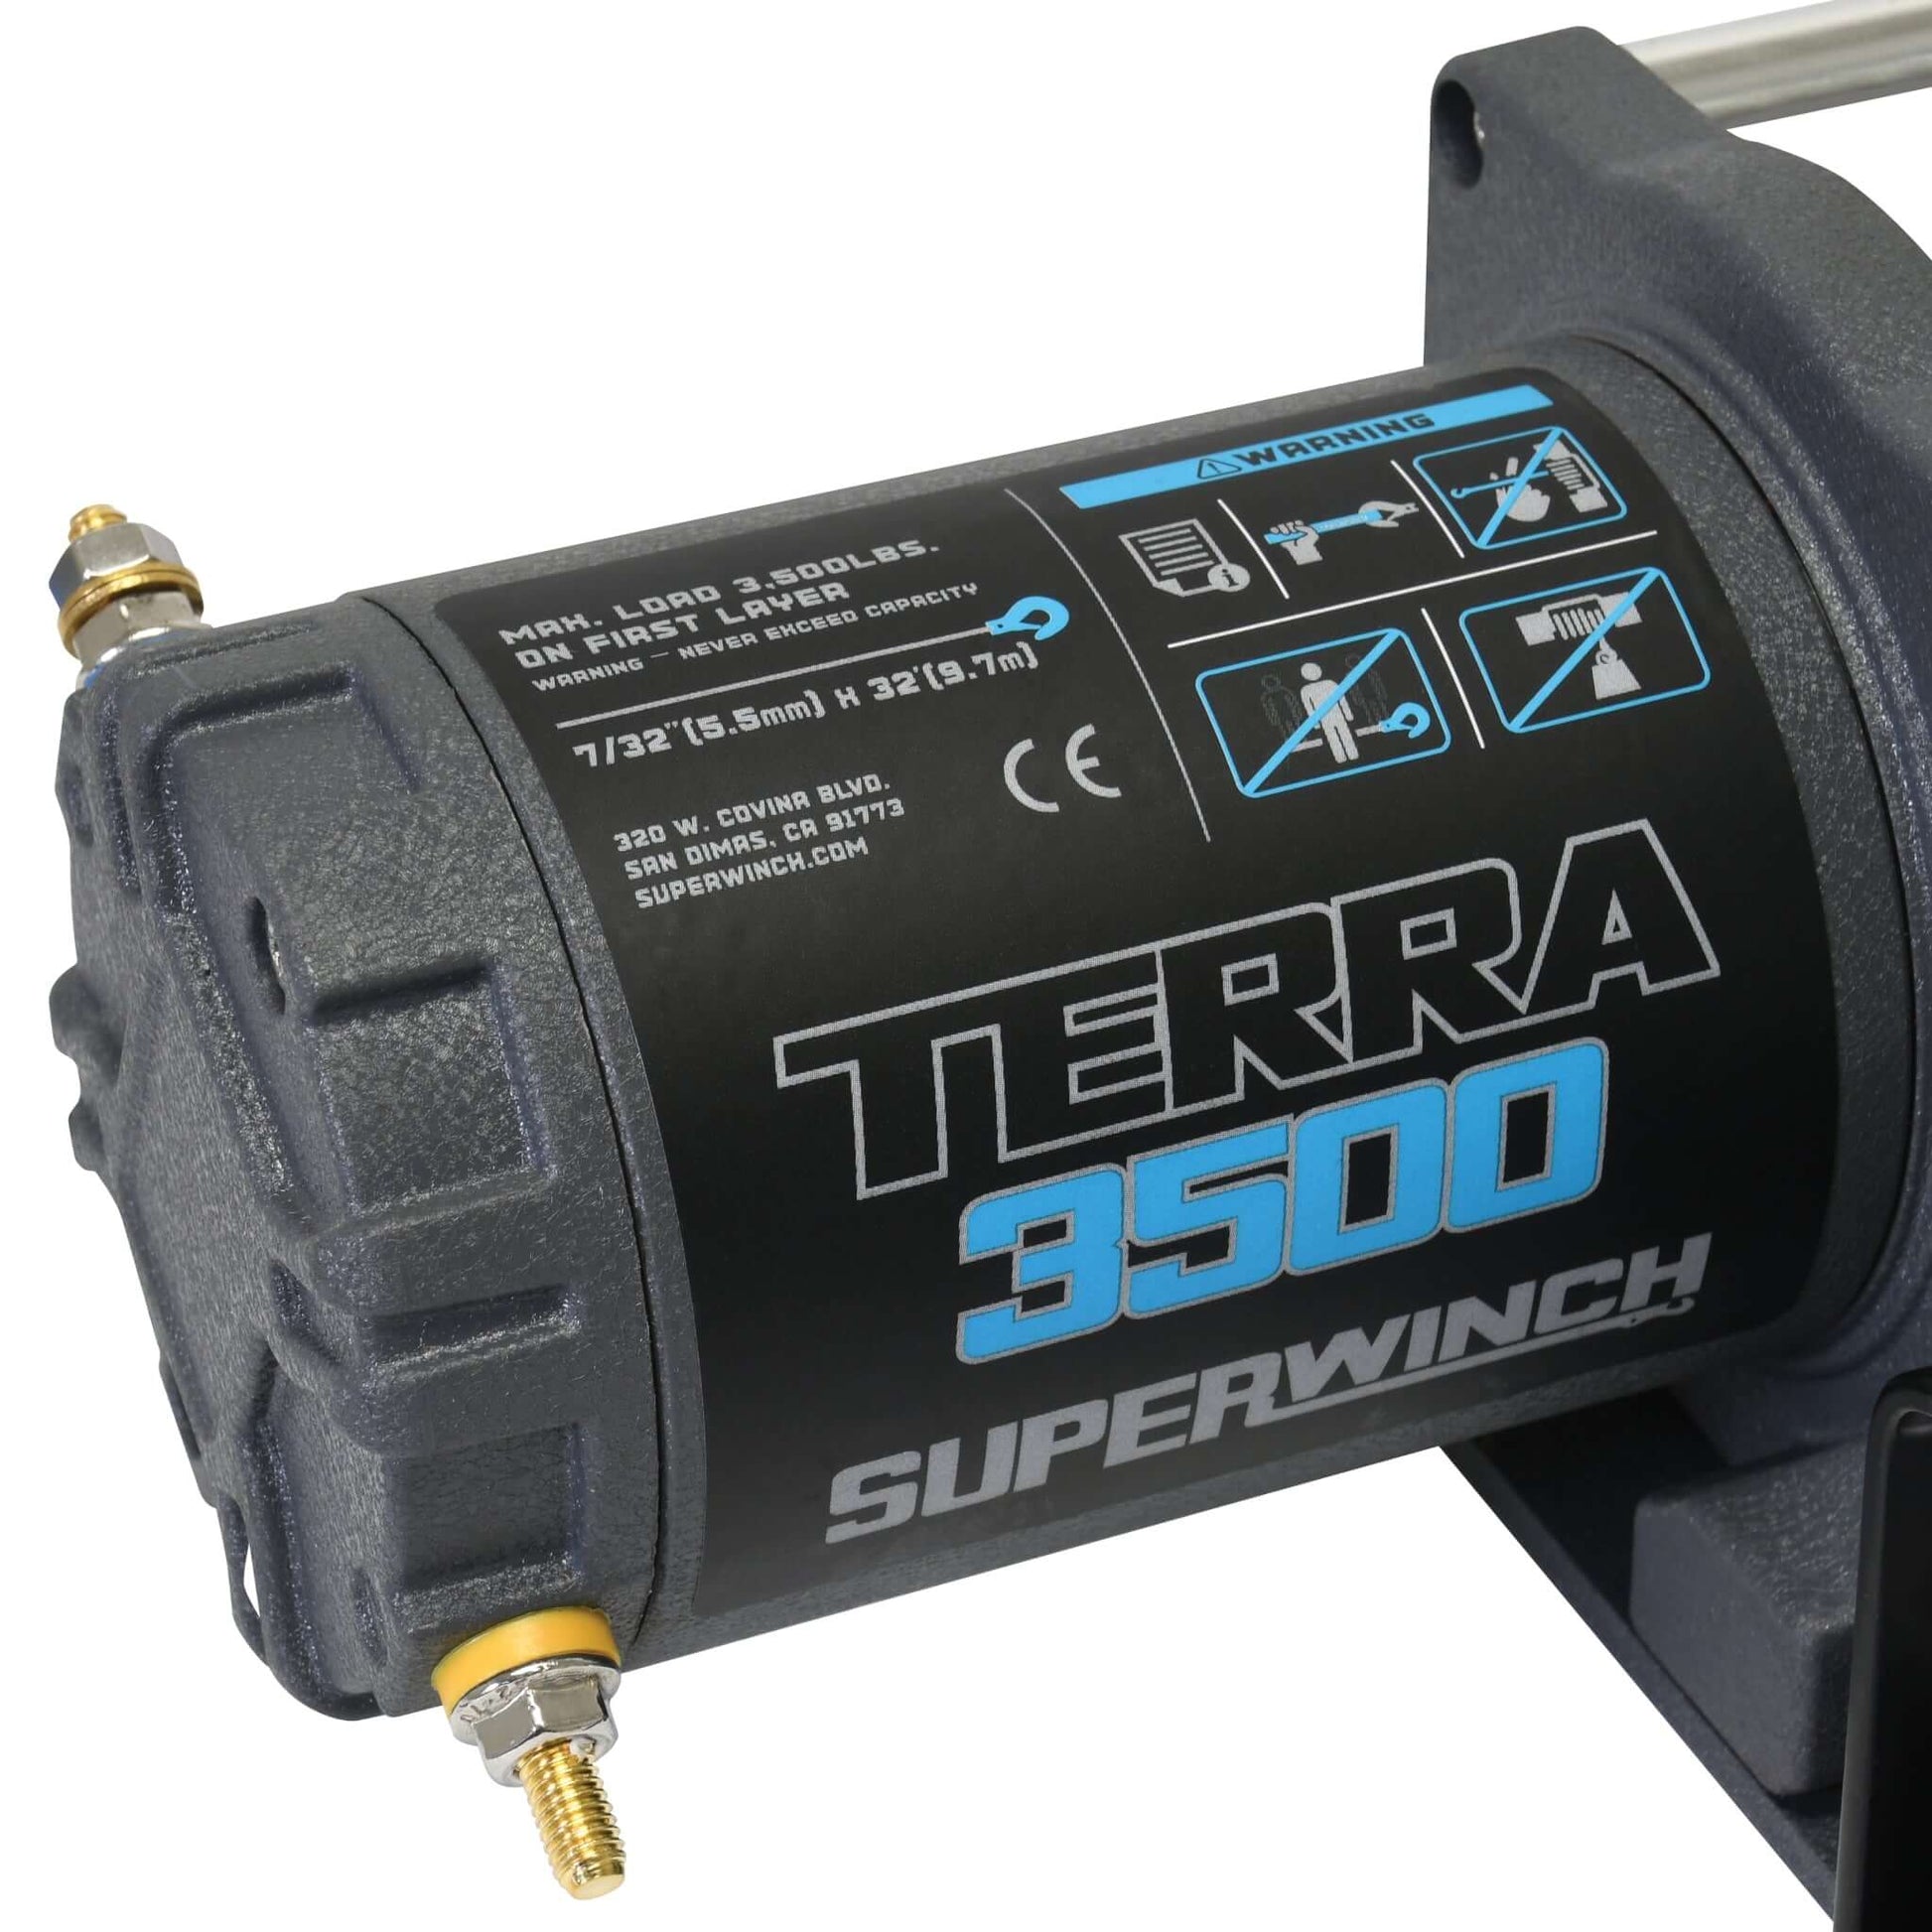 Die Superwinch Terra 3500 ist die ideale Alternative zur Handseilwinde und besonders für leichte Lasten geeignet. Im Lieferumfang enthalten sind eine Kabelfernbedienung, Einbauschalter, Steckdose, Relais, Rollenfenster, Batteriekabel und ein Stahlseil mit